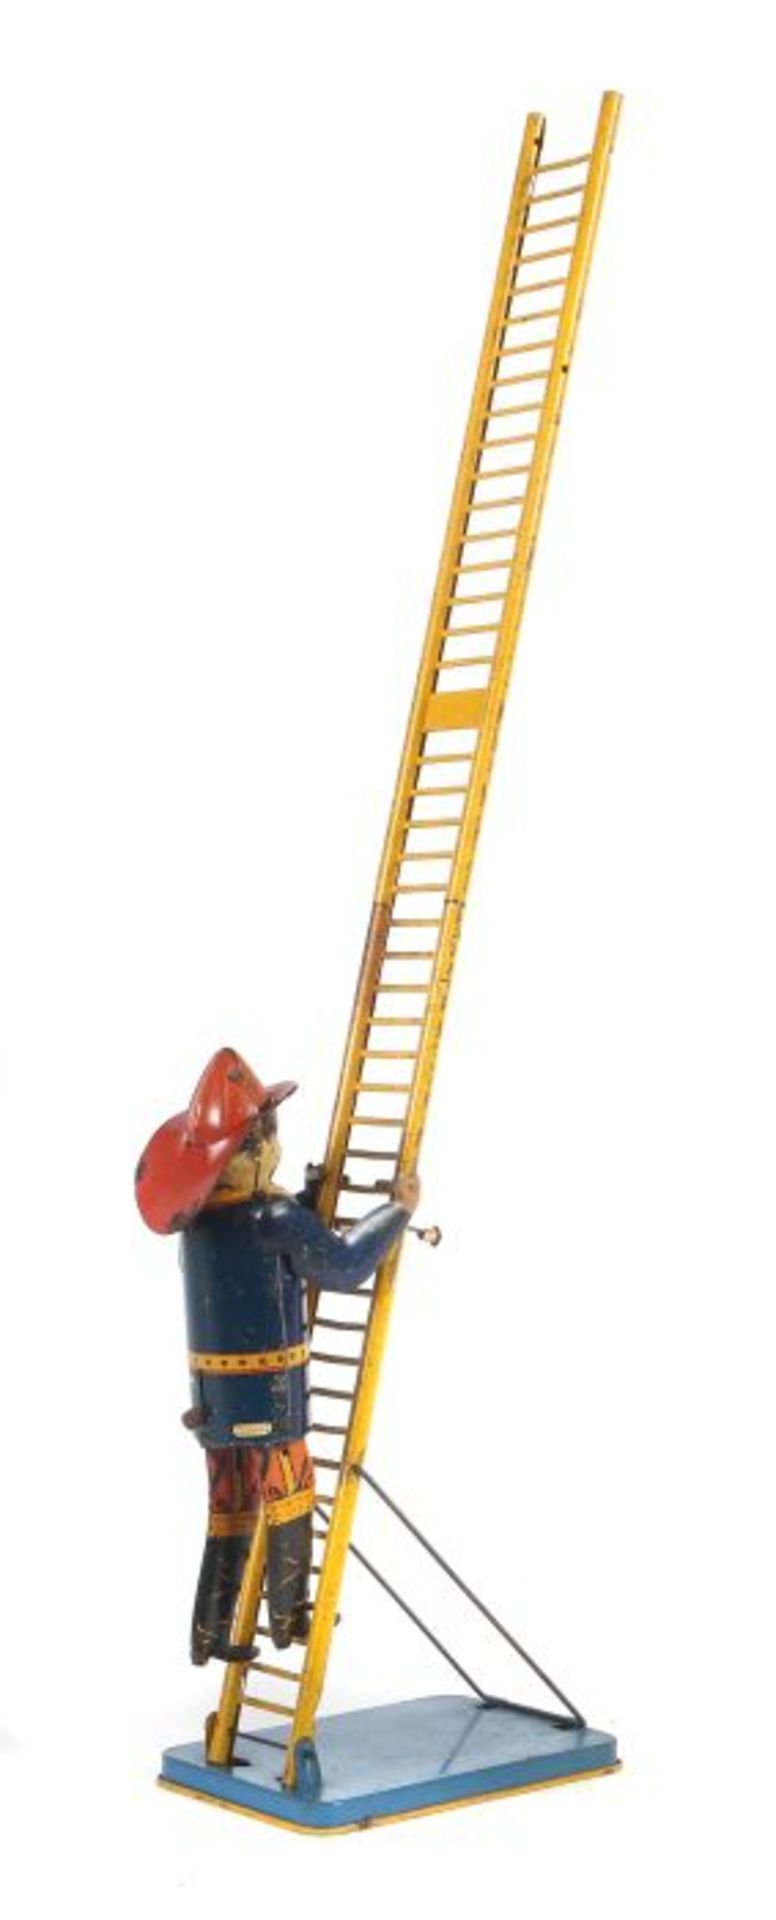 Amerikanischer FeuerwehrmannLouis Marx & Co. NY. USA, "Fireman ladder", Blech lithografiert,